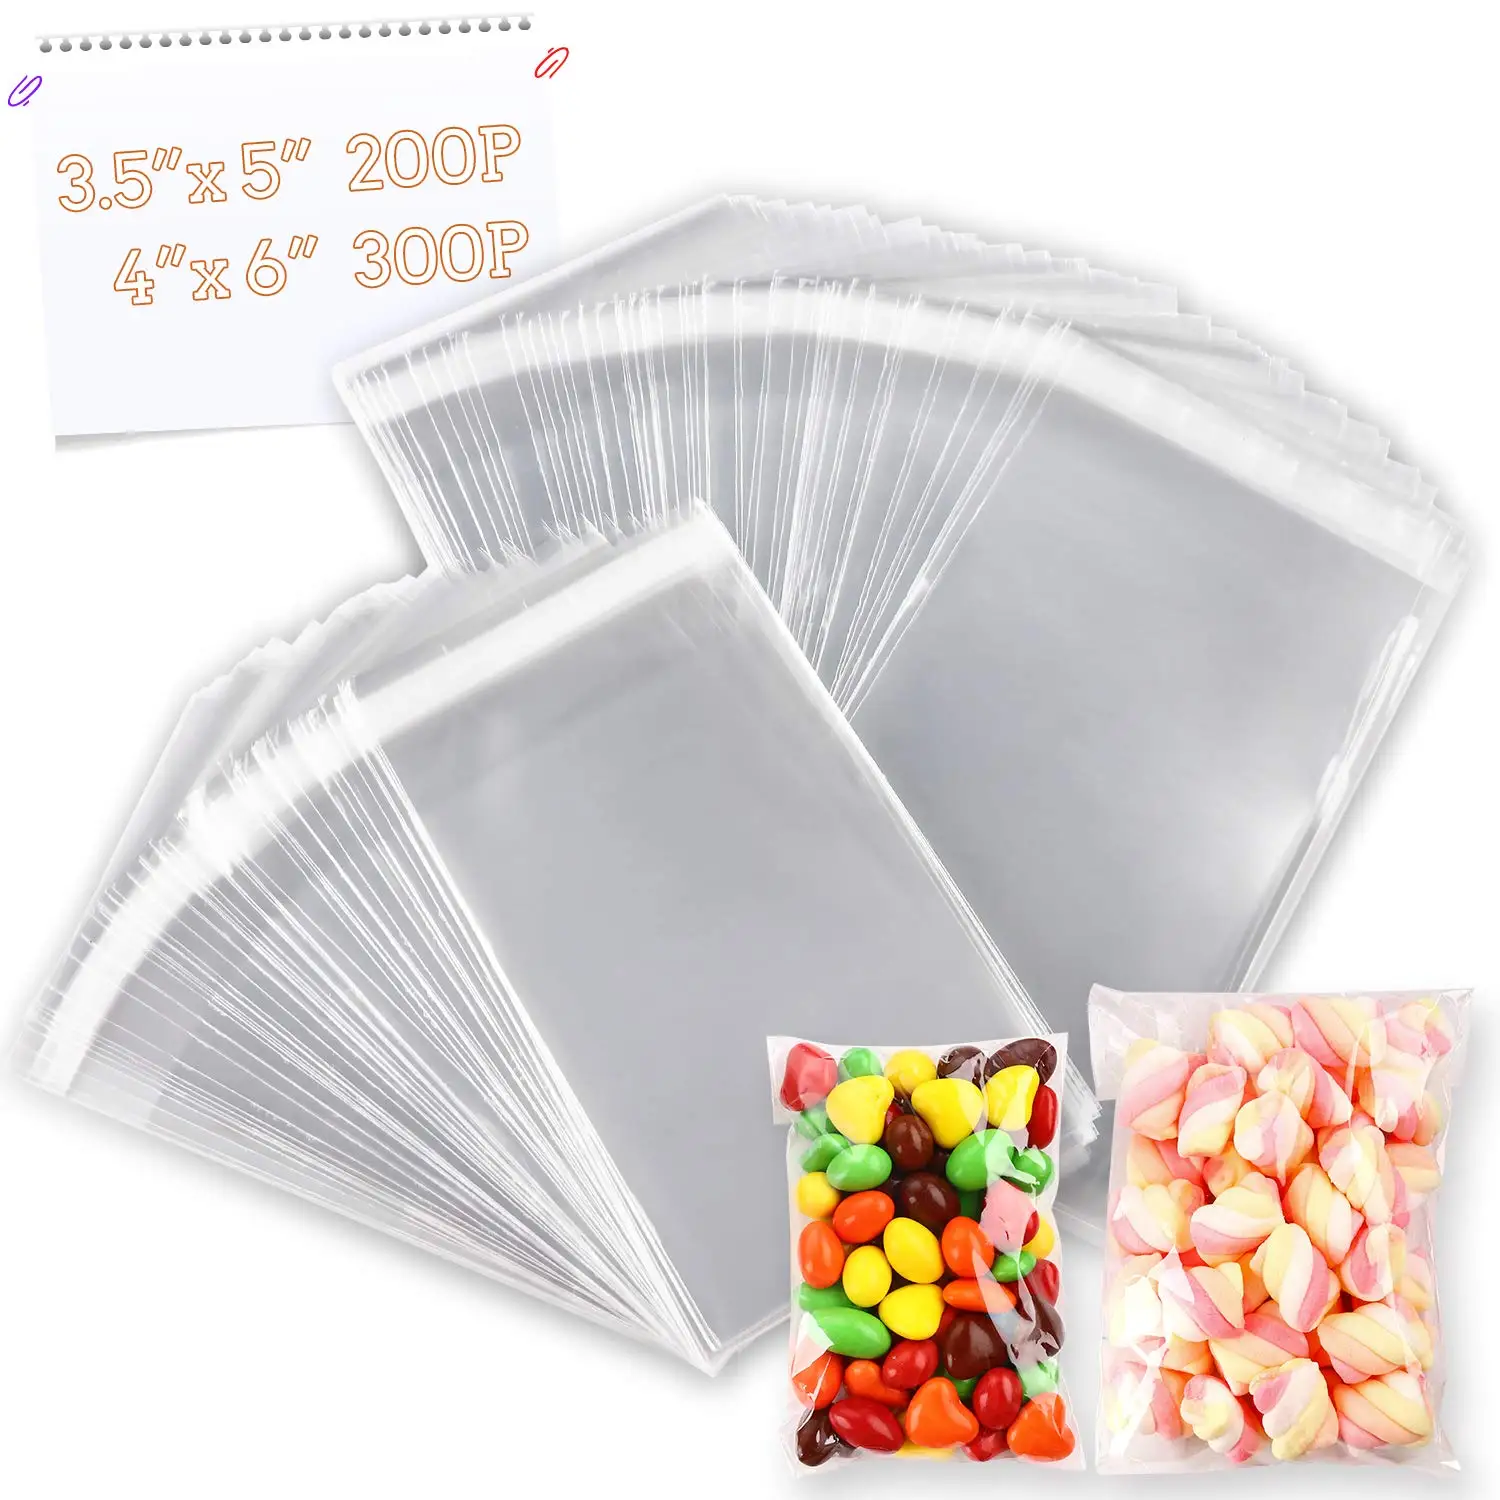 Self-adhesive Plastic Bag, Plastic Cellophane Bags